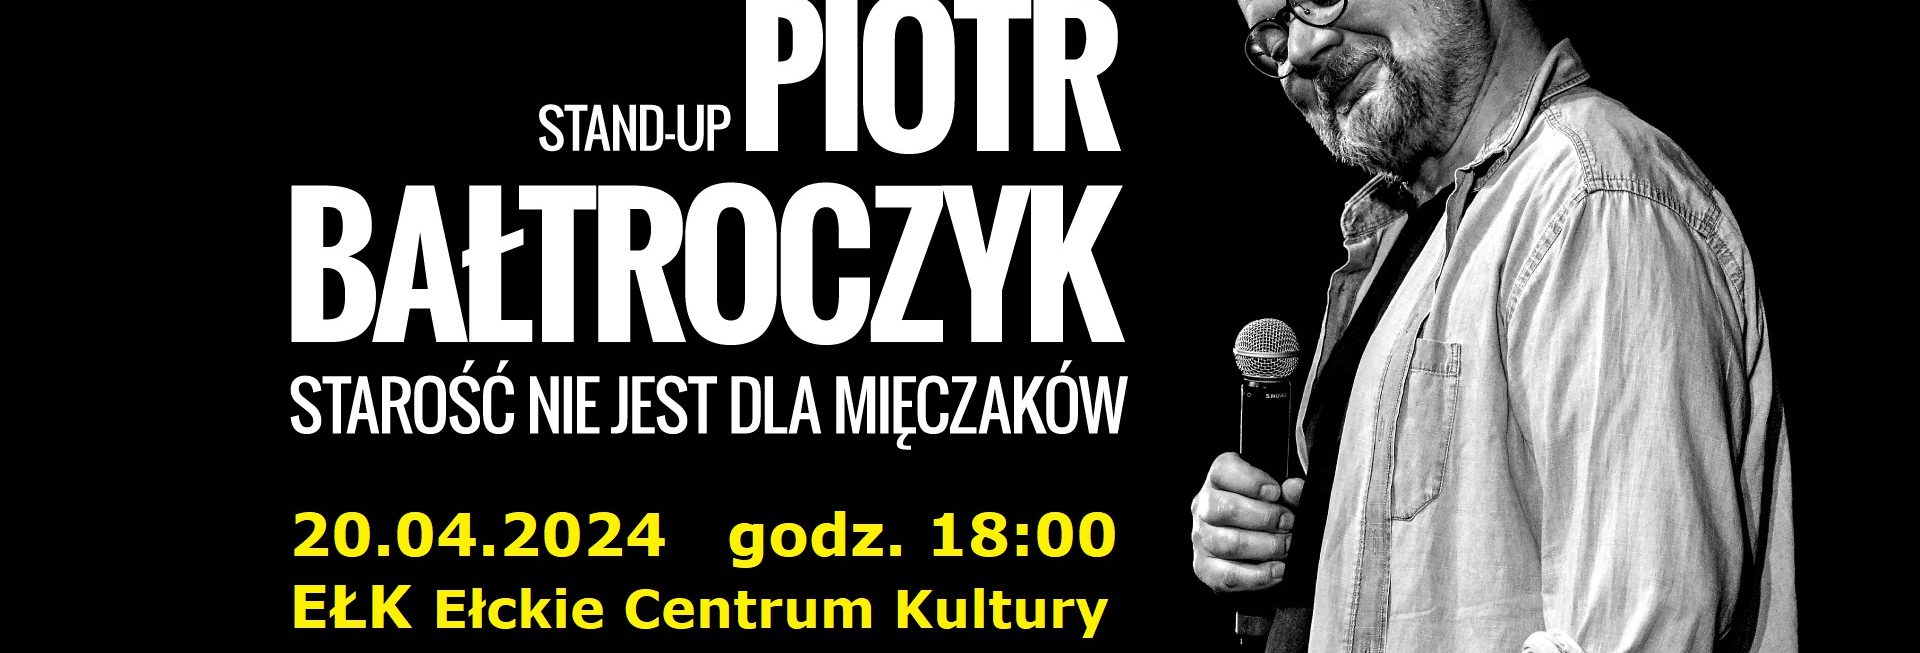 Plakat zapraszający w sobotę 20 kwietnia 2024 r. do Ełku na stand-Up Piotr Bałtroczyk Ełk 2024.